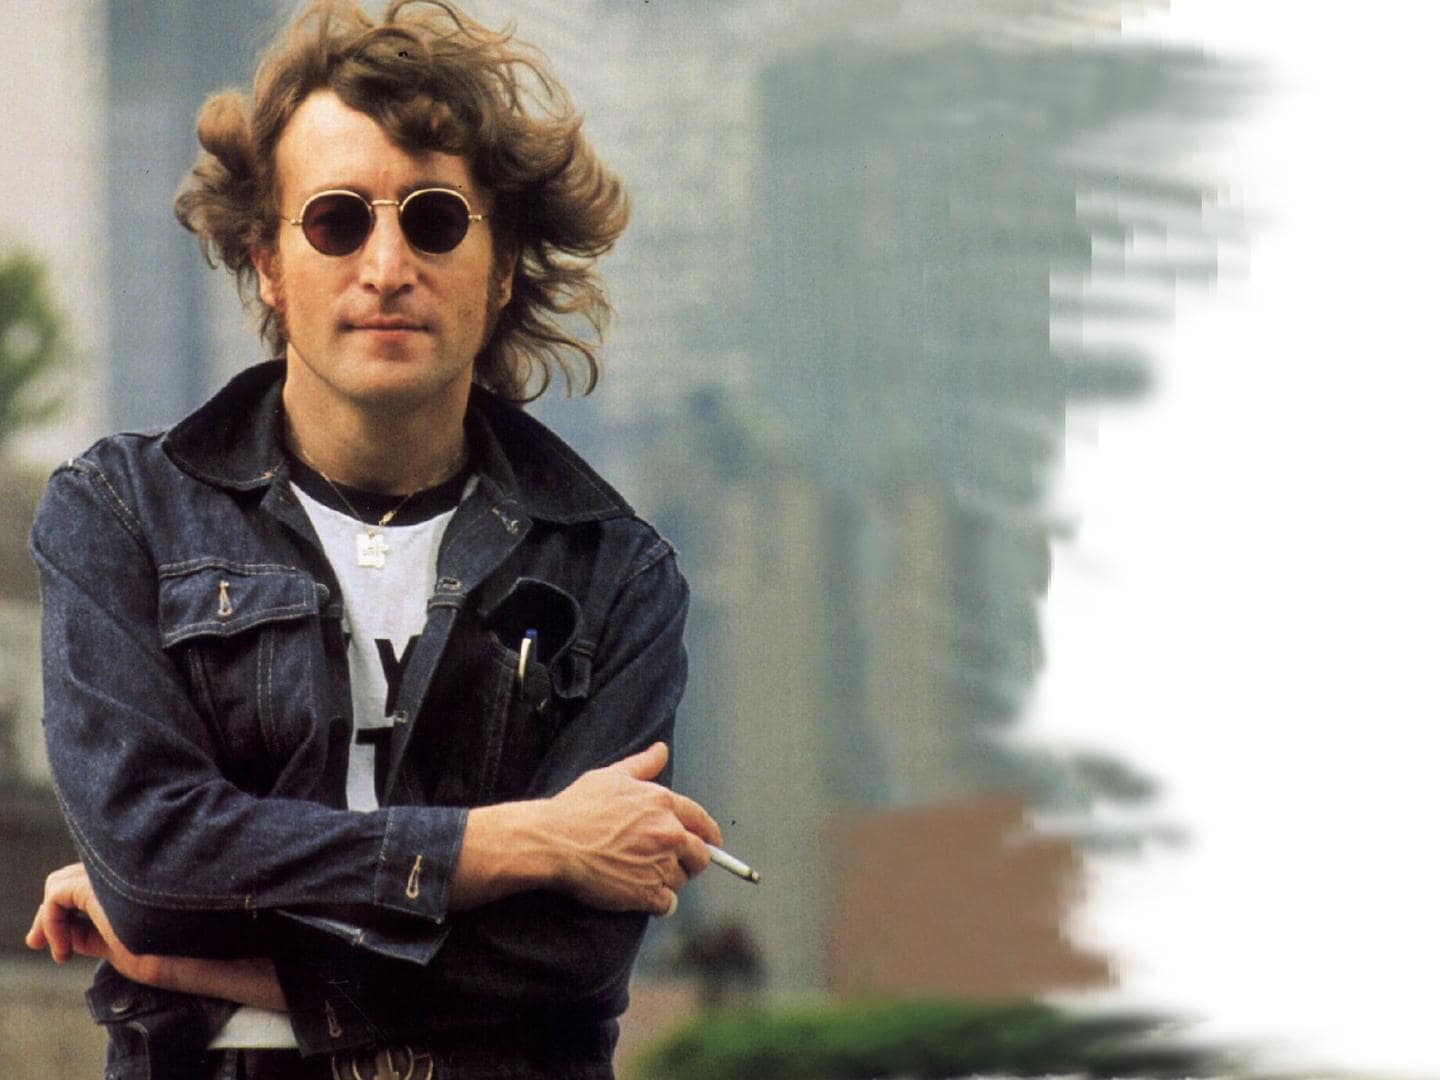 John Lennon Fashion - John Lennon Ever Changing Always Inspiring